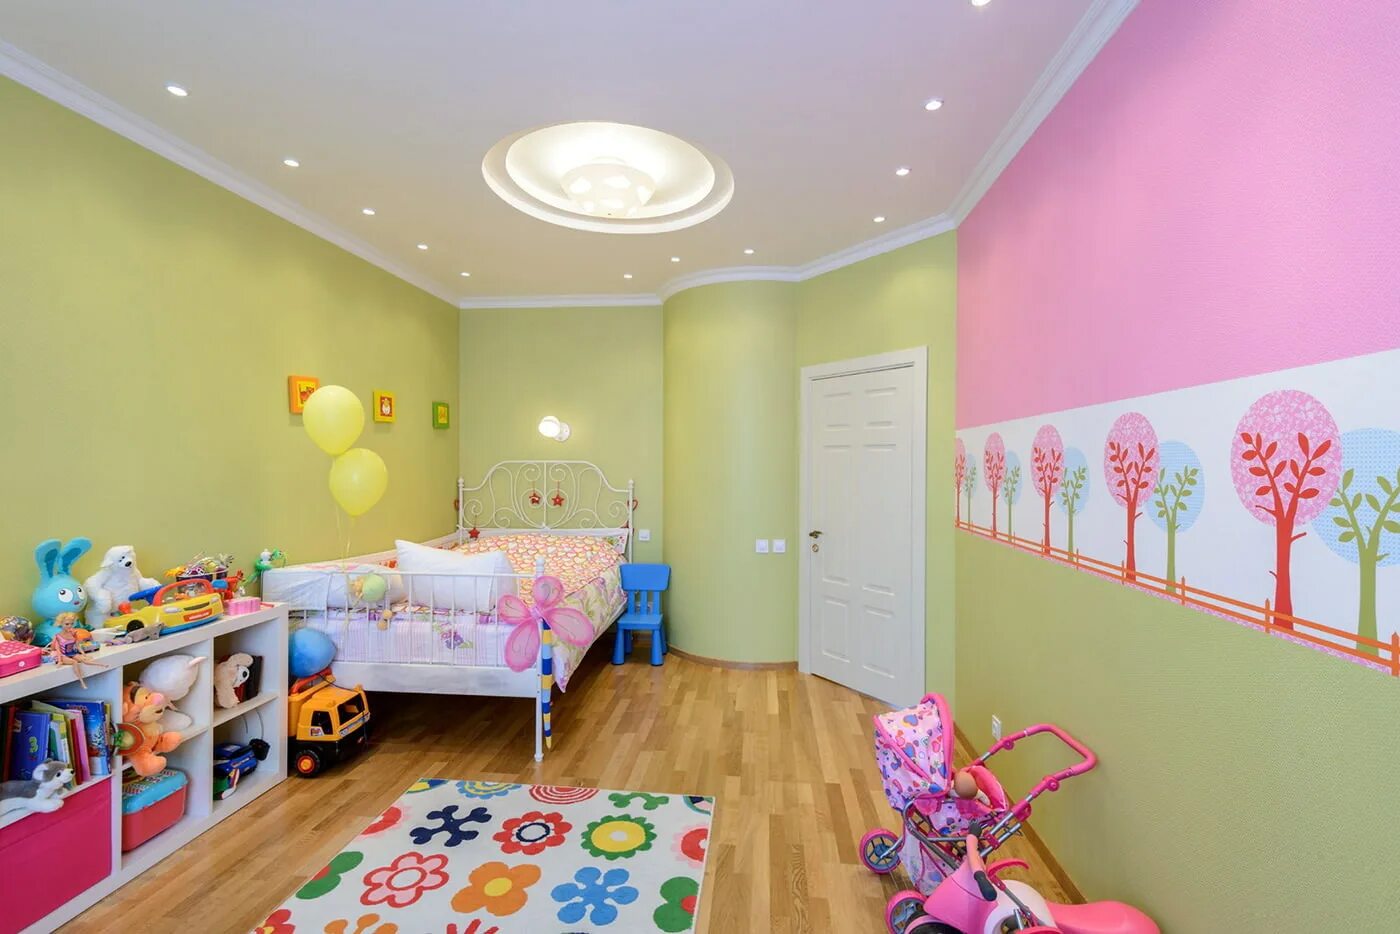 Комнате ребенка должно быть. Потолок в детской. Натяжной потолок в детской. Освещение в детской. Потолок в детской комнате натяжной.